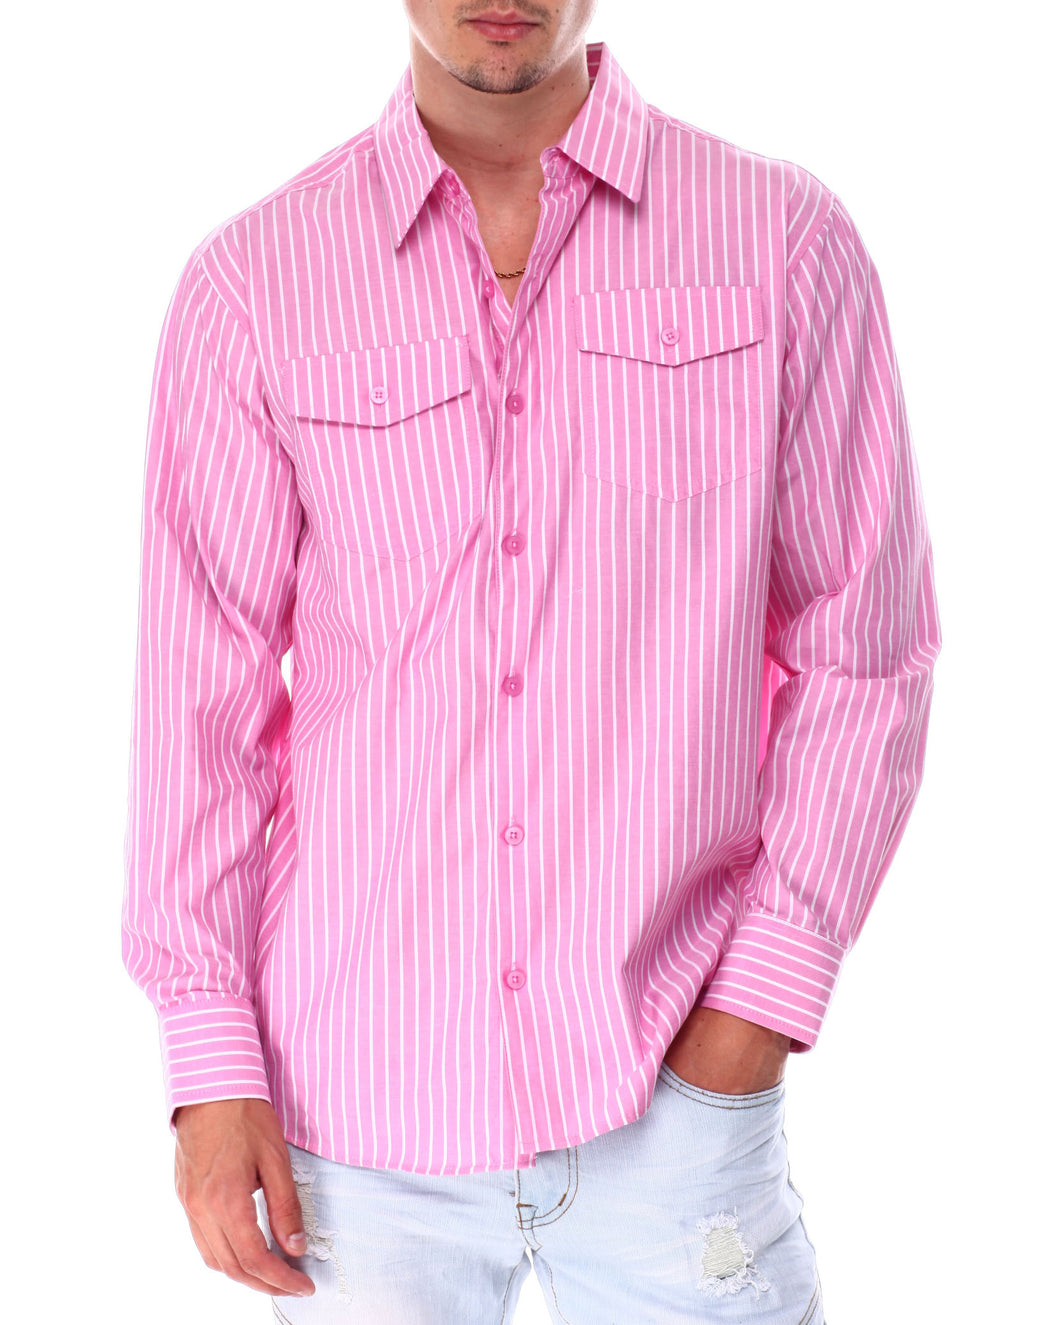 Men's Pink & White Stripe Long Sleeve Button Down Shirt